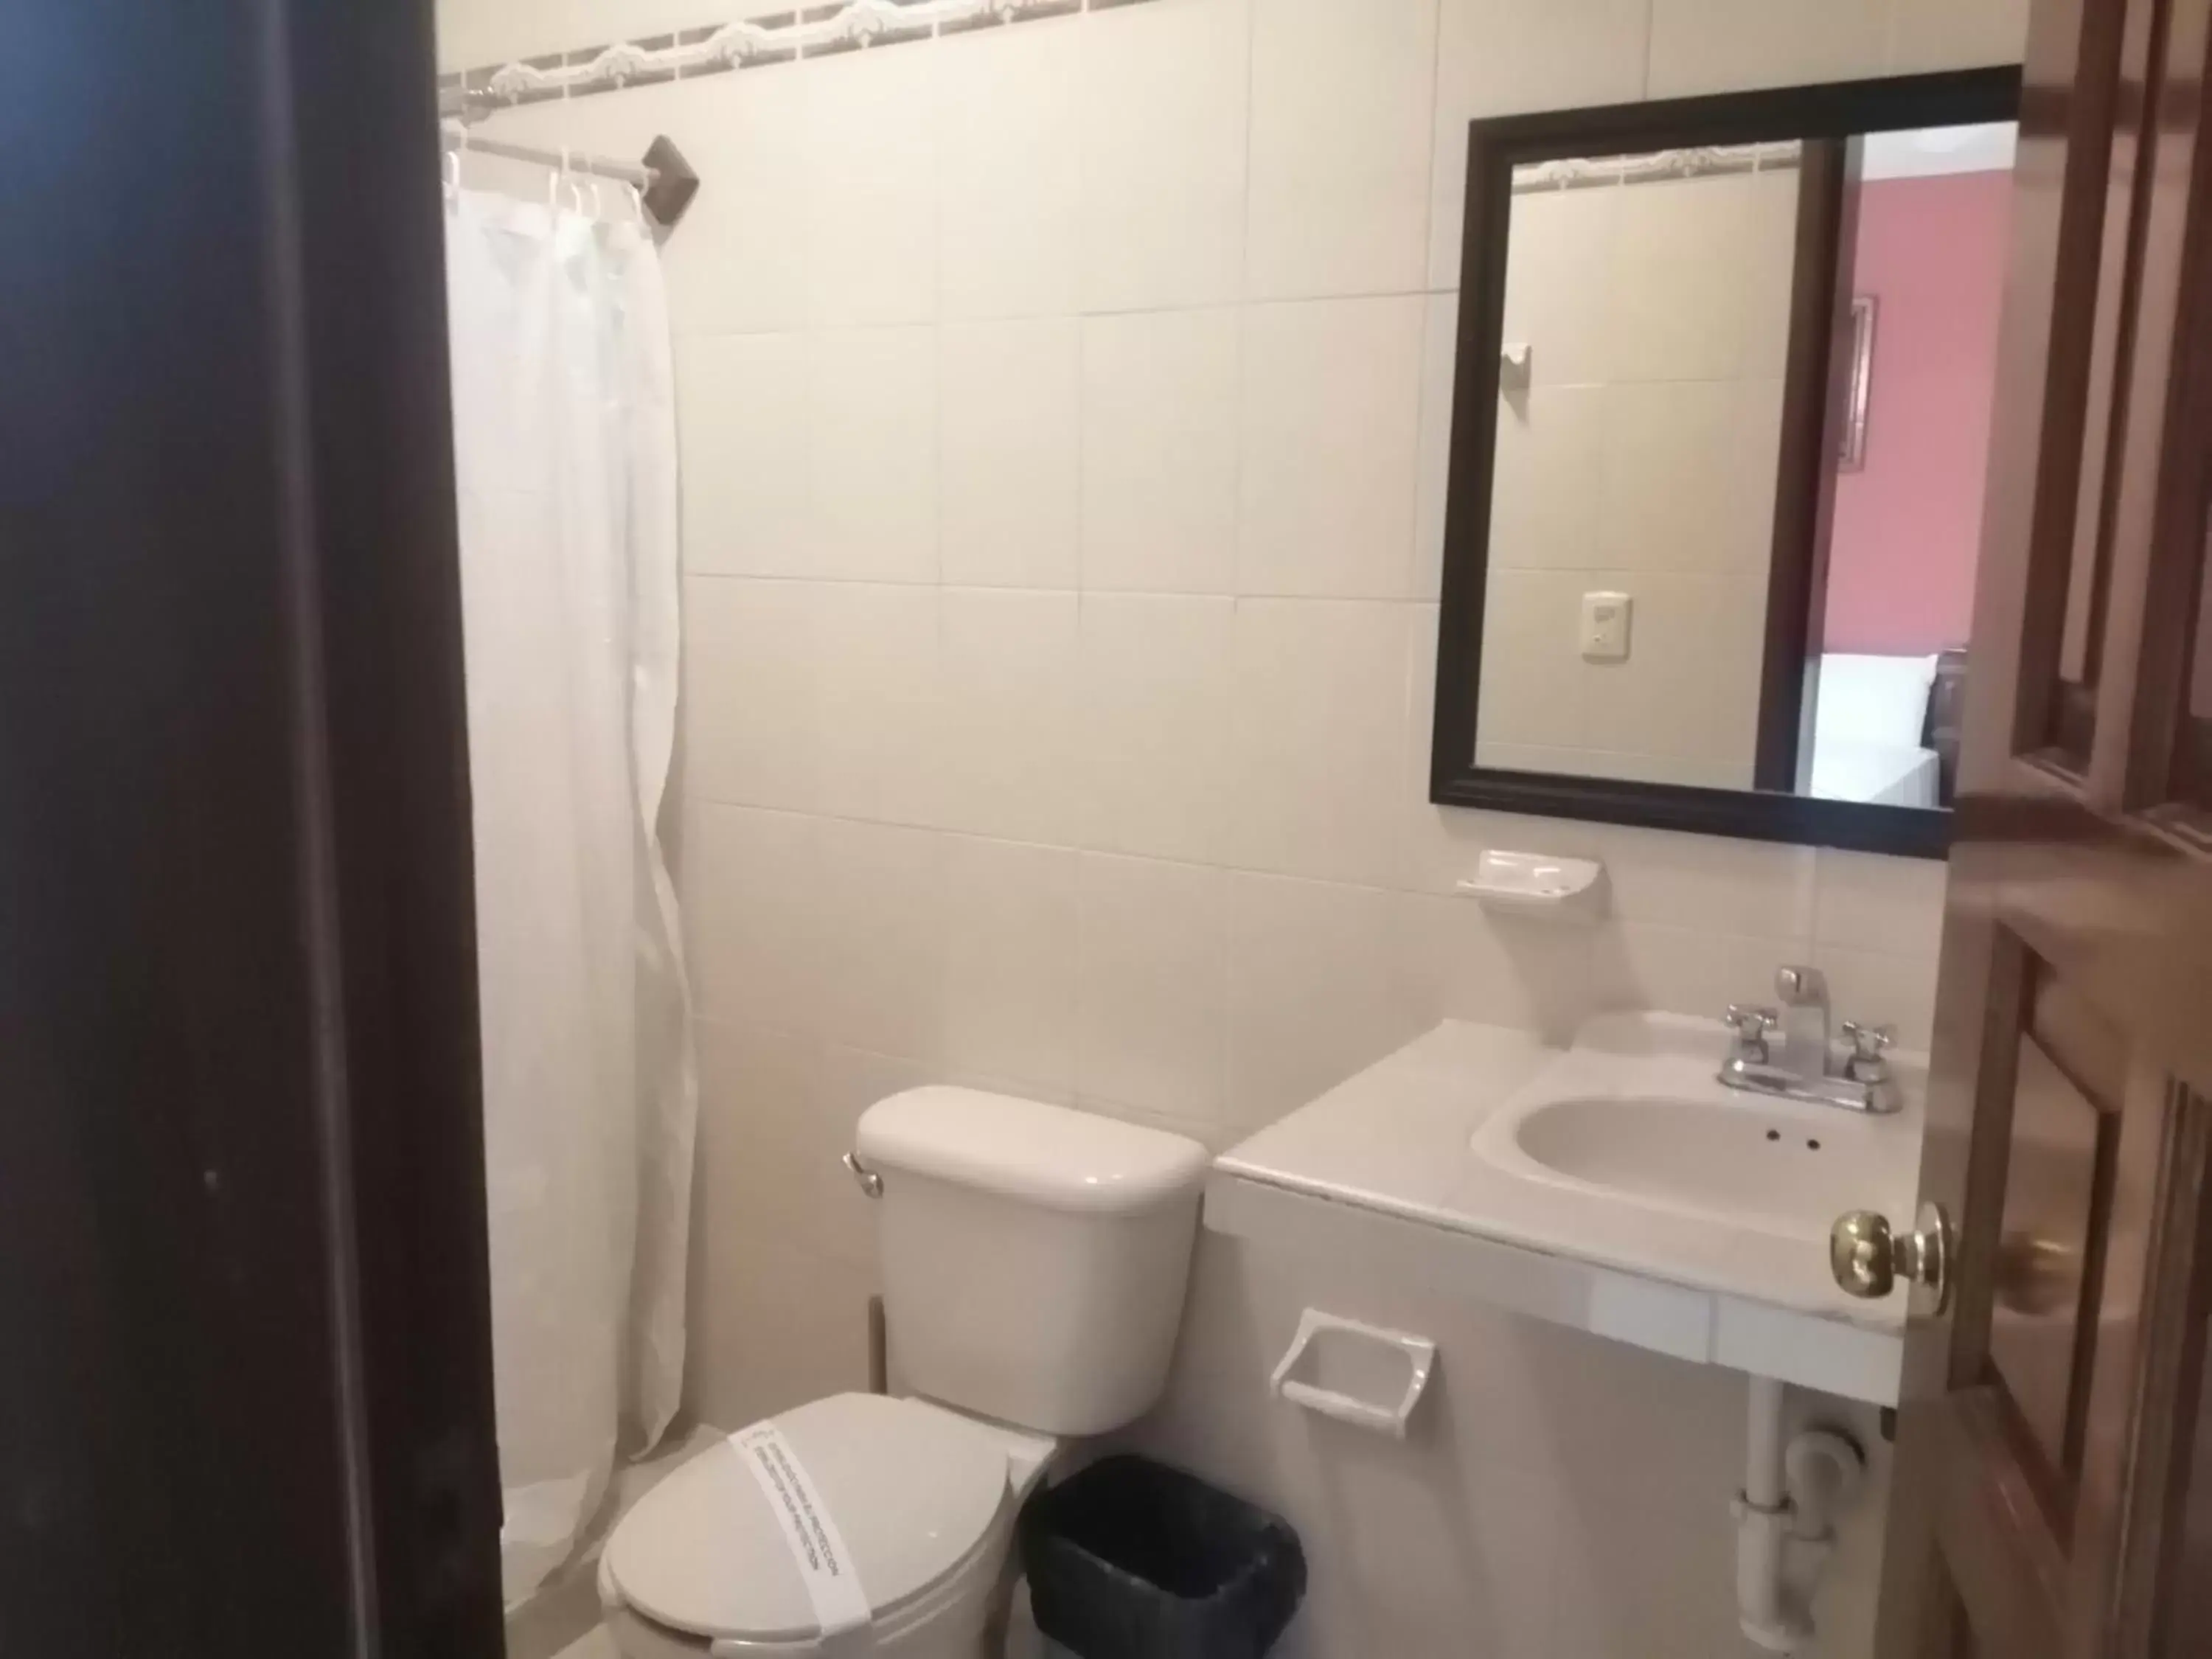 Bathroom in Hotel Santa Lucía